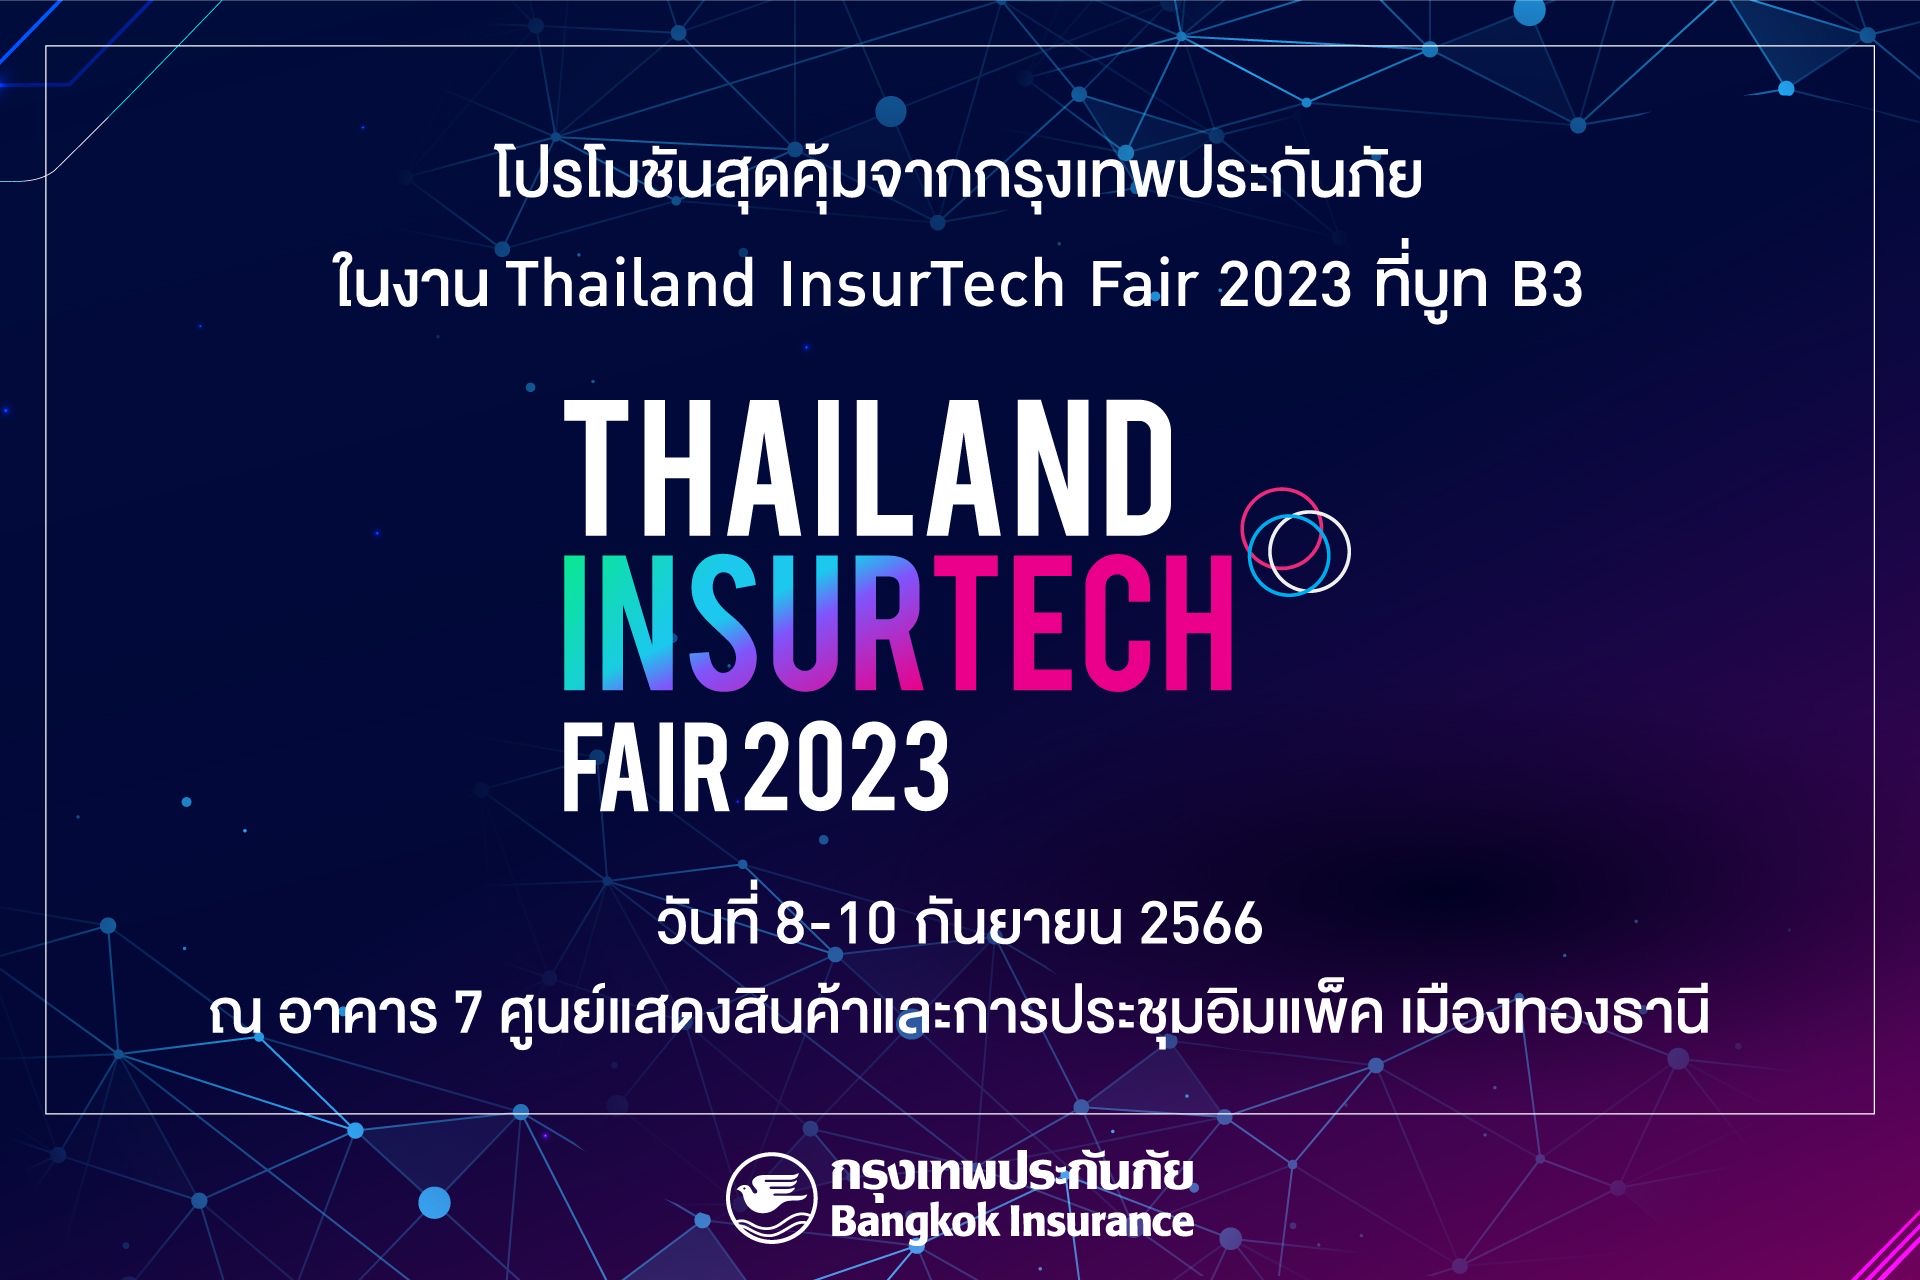 กรุงเทพประกันภัยร่วมกับธนาคารกรุงเทพ และกรุงเทพประกันชีวิต ออกบูทในงาน Thailand InsurTech Fair 2023